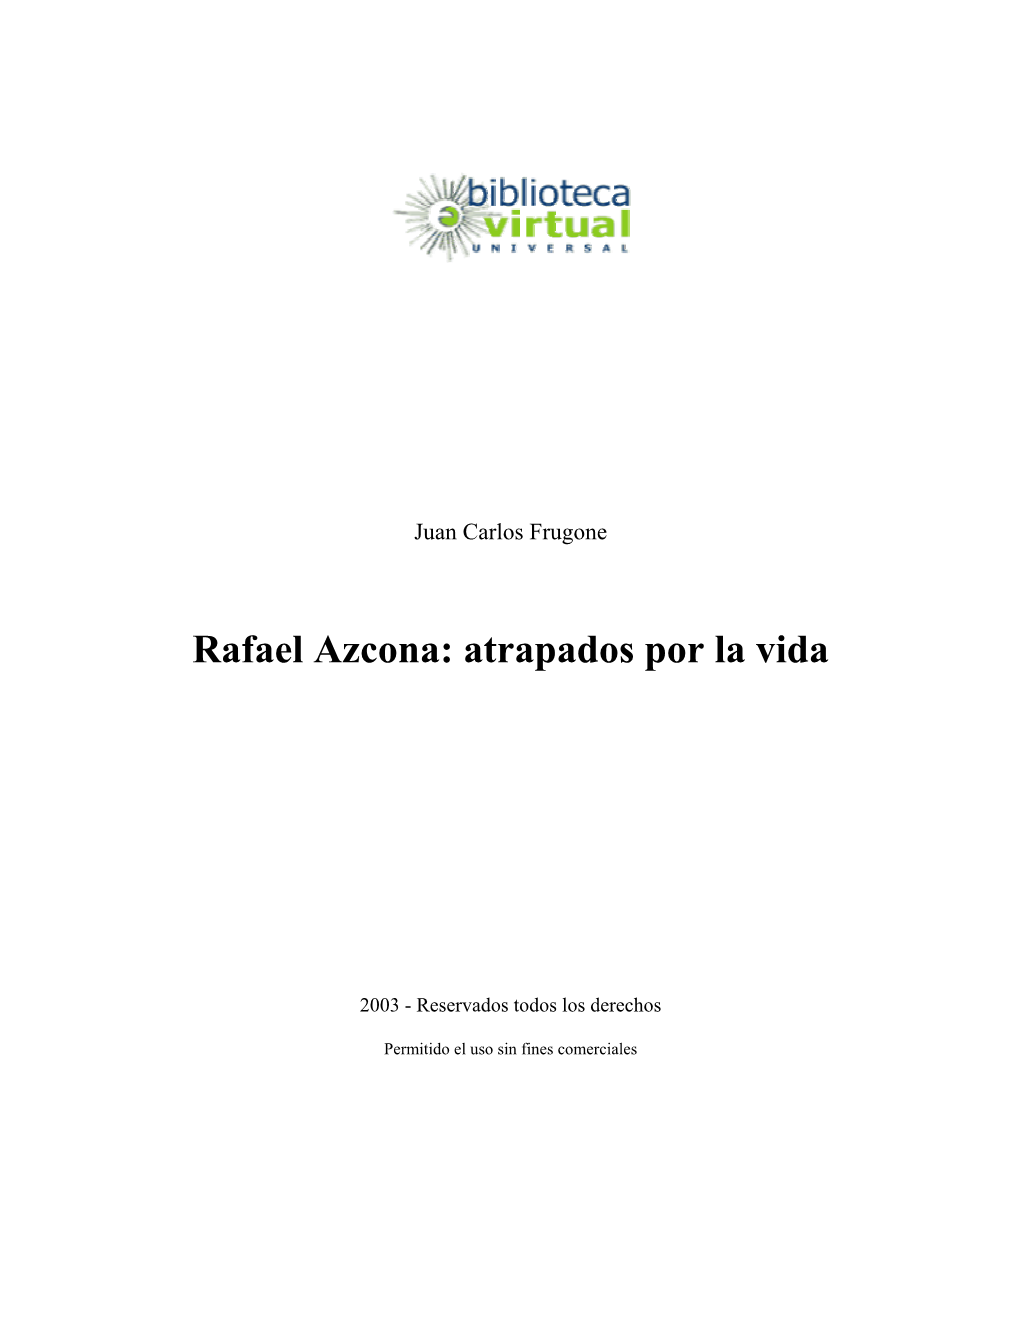 Rafael Azcona: Atrapados Por La Vida